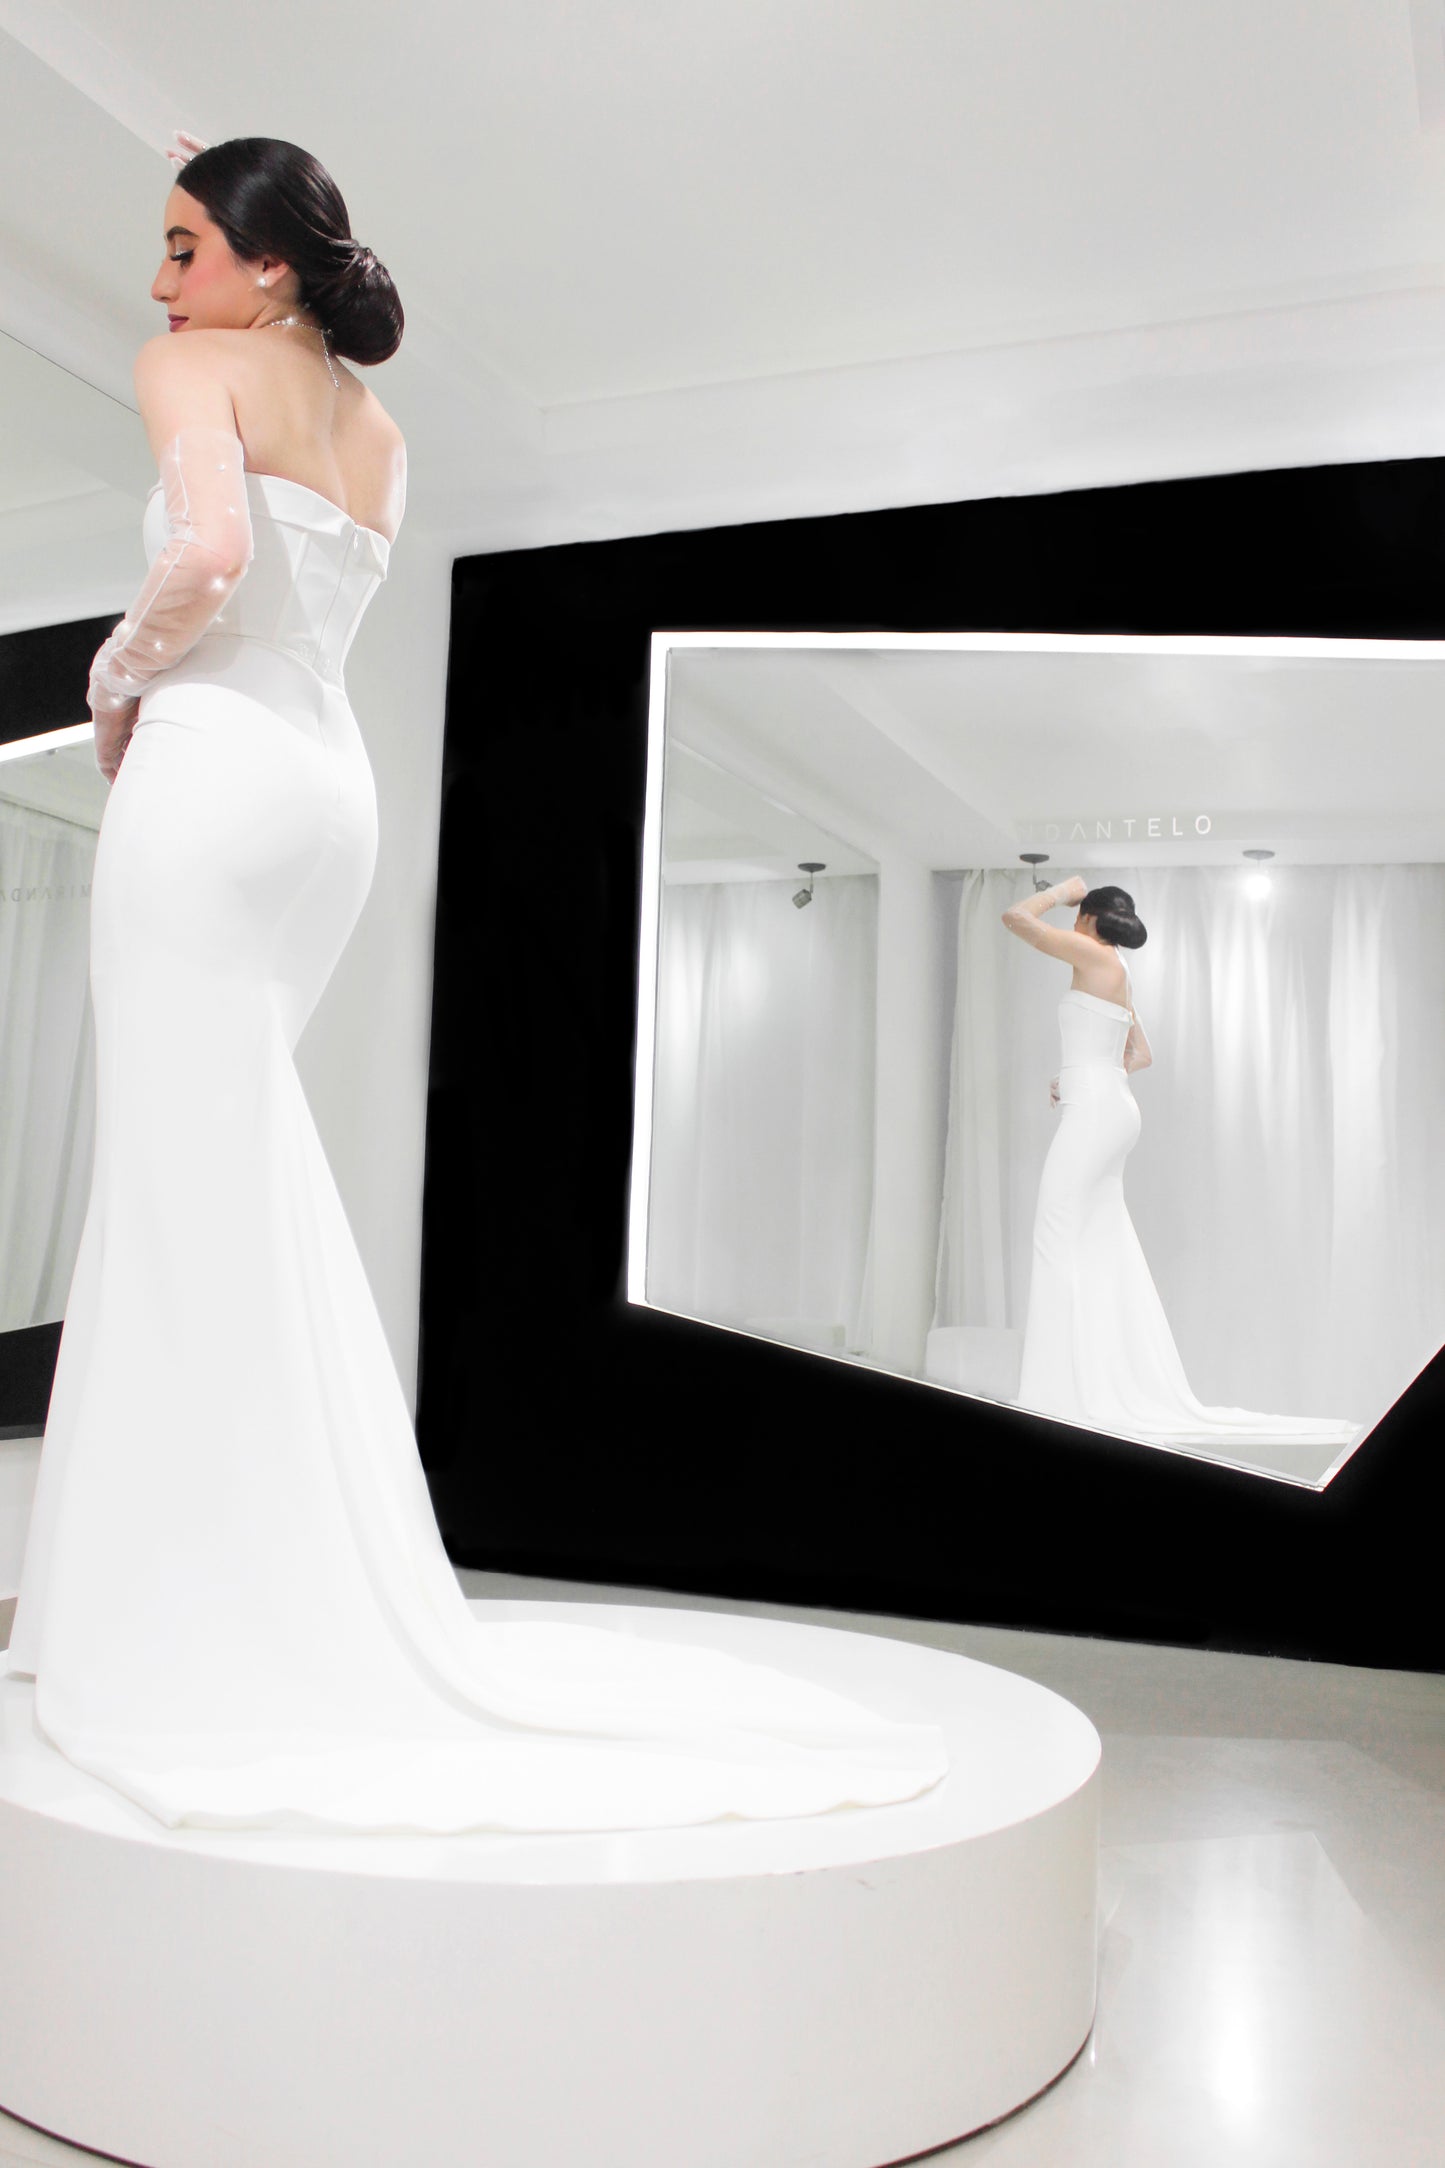 Fotografía de una mujer que lleva un vestido de fiesta blanco con una cola larga y unos guantes largos de tul con pequeños cristales, se encuentra sobre un pedestal circular blanco en una habitación bien iluminada, con su reflejo visible en un gran espejo colocado en ángulo hacia la derecha.